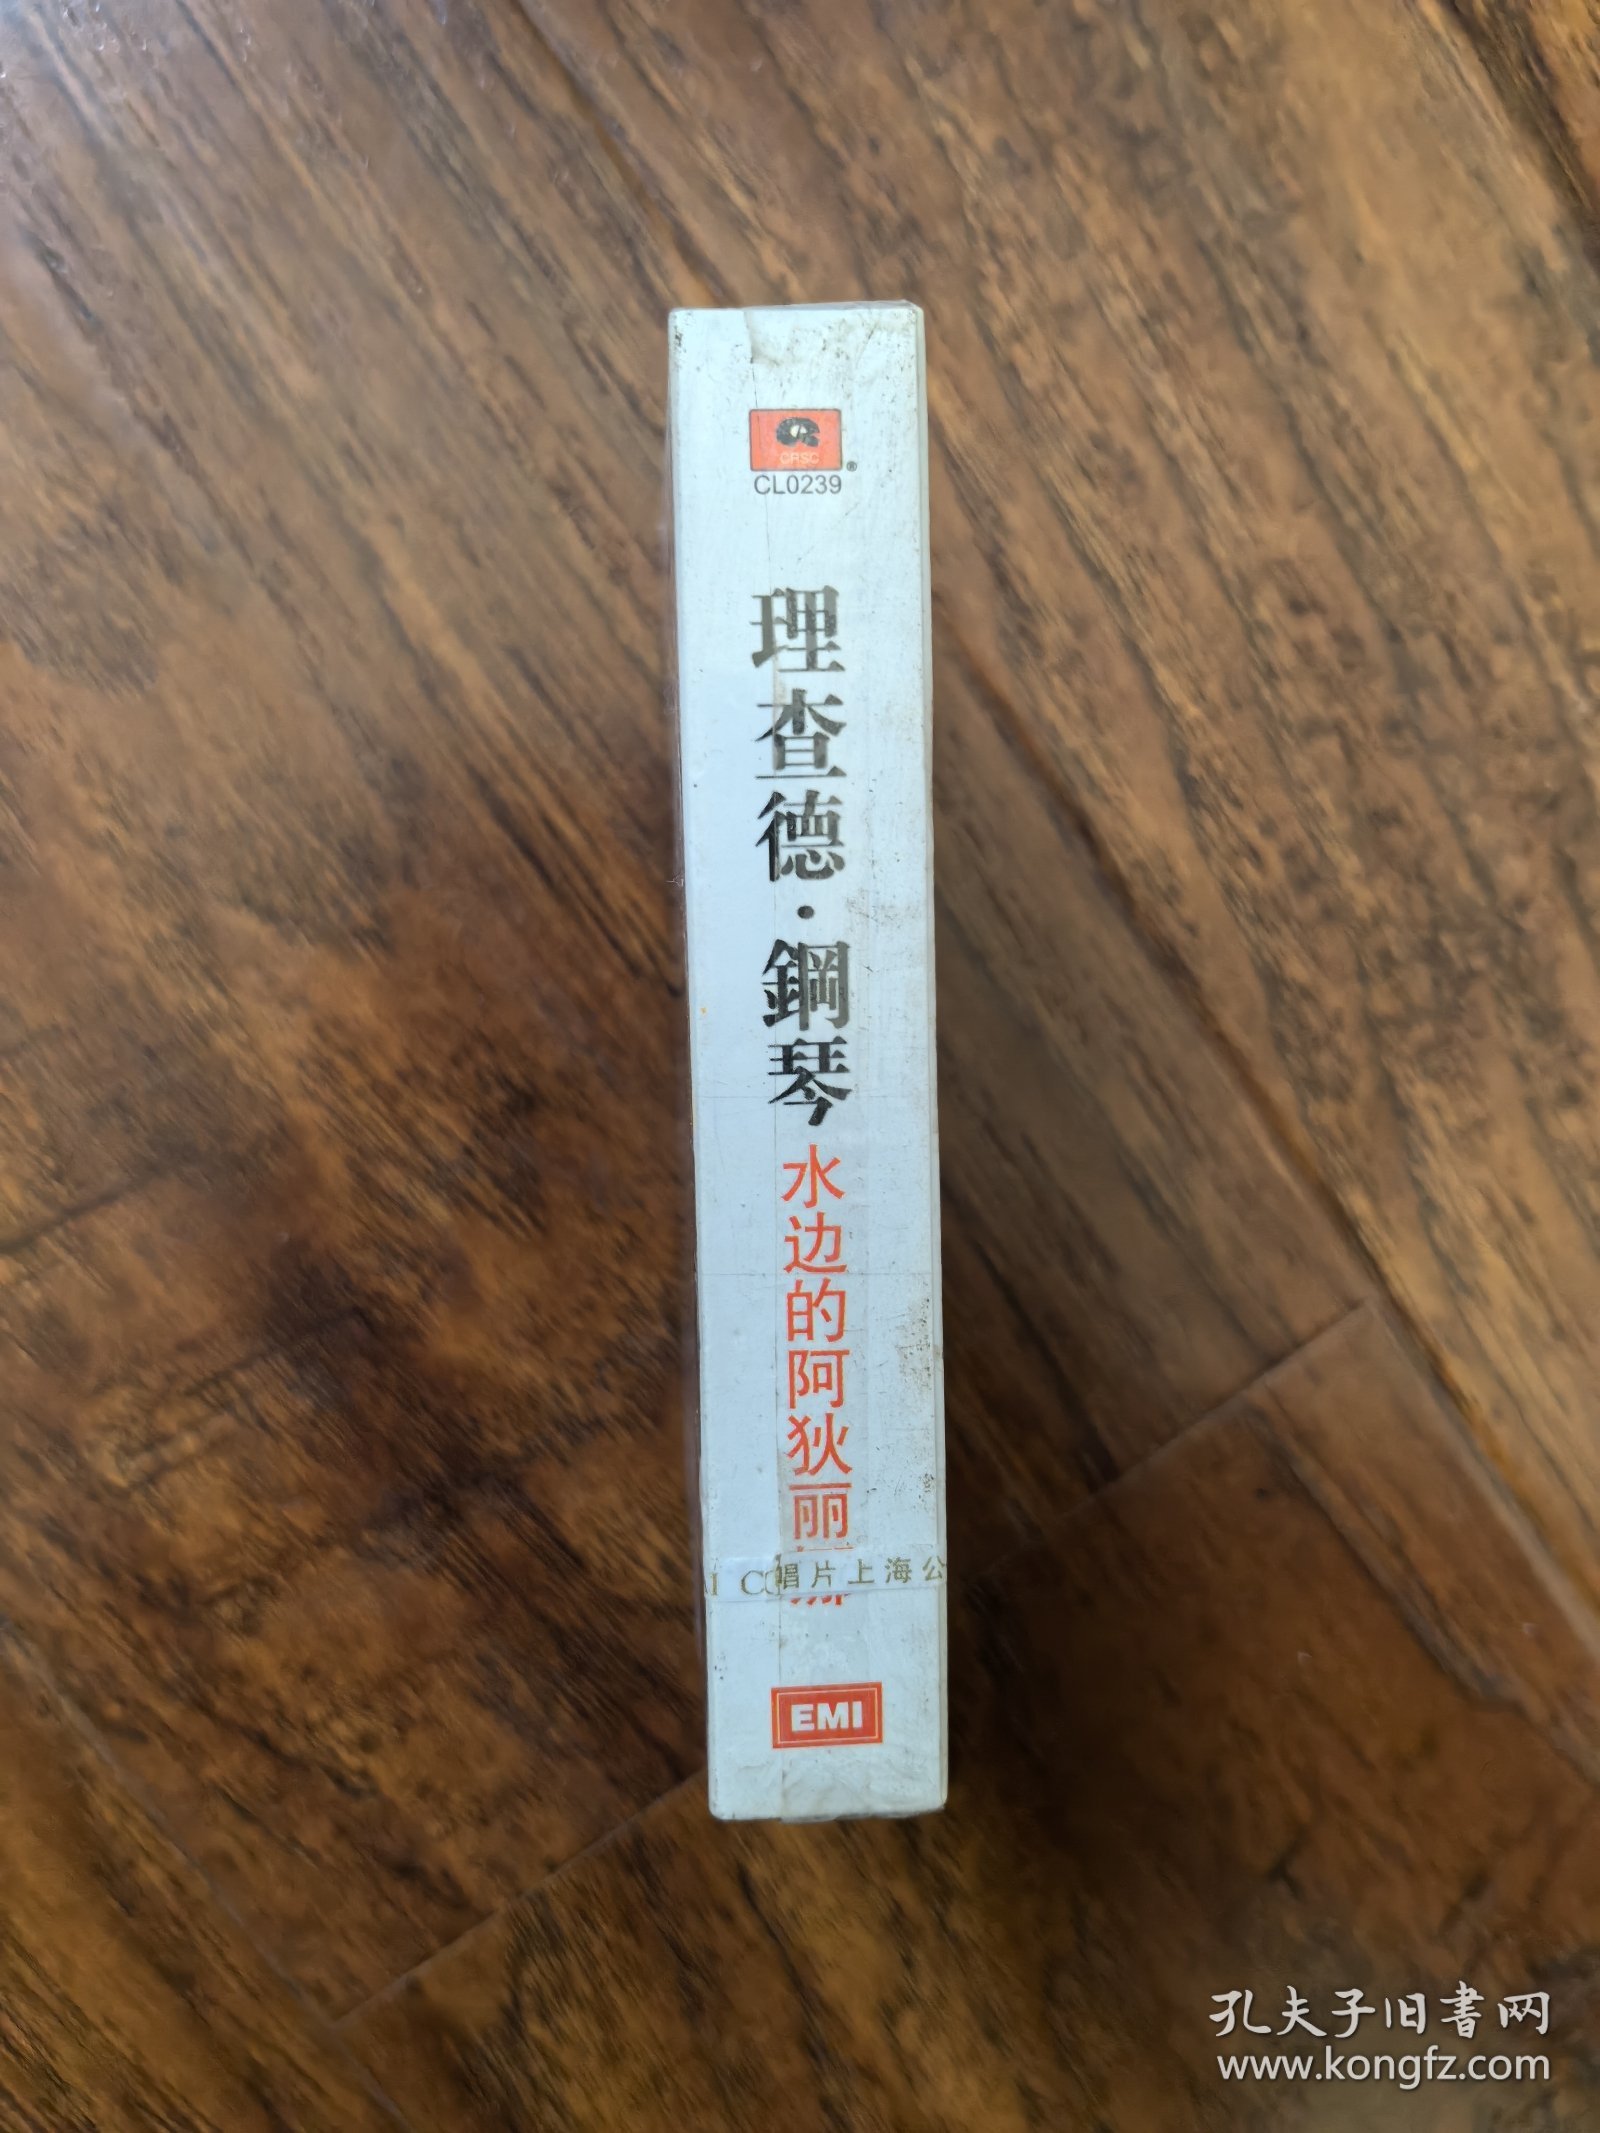 全新未拆封磁带：理查德.克莱德曼钢琴曲《水边的阿狄丽娜》.中唱上海公司出版发行（CL0239）